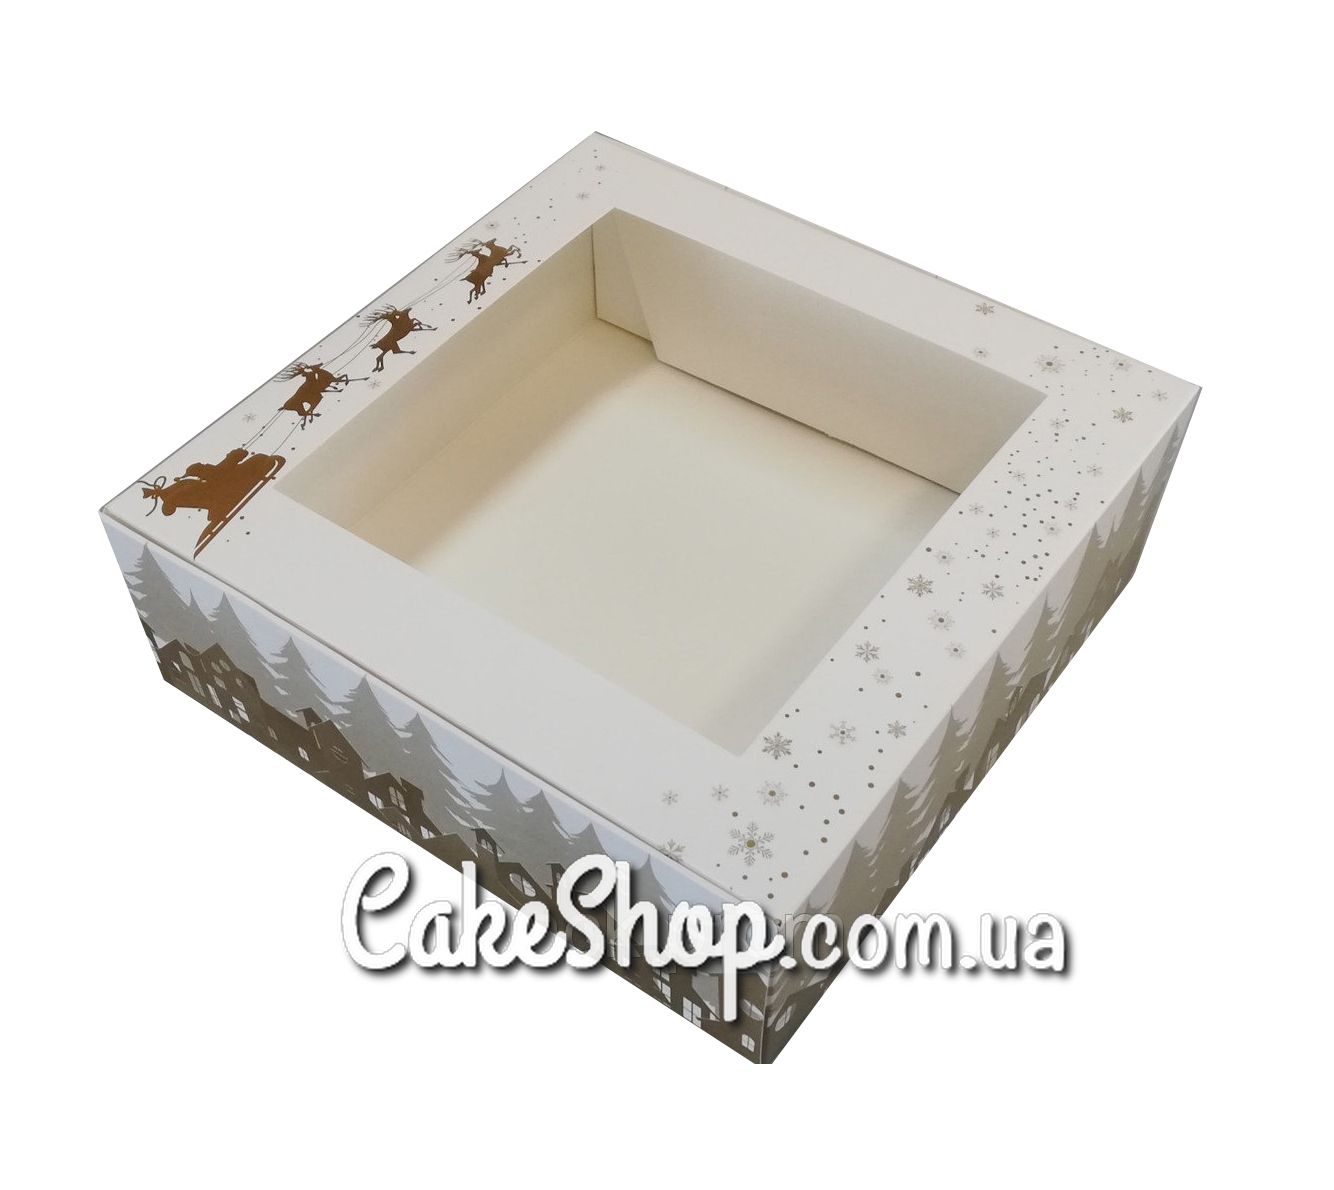 ⋗ Коробка для зефира с окном принт ЗОЛОТО, 20х20х7 см купить в Украине ➛ CakeShop.com.ua, фото